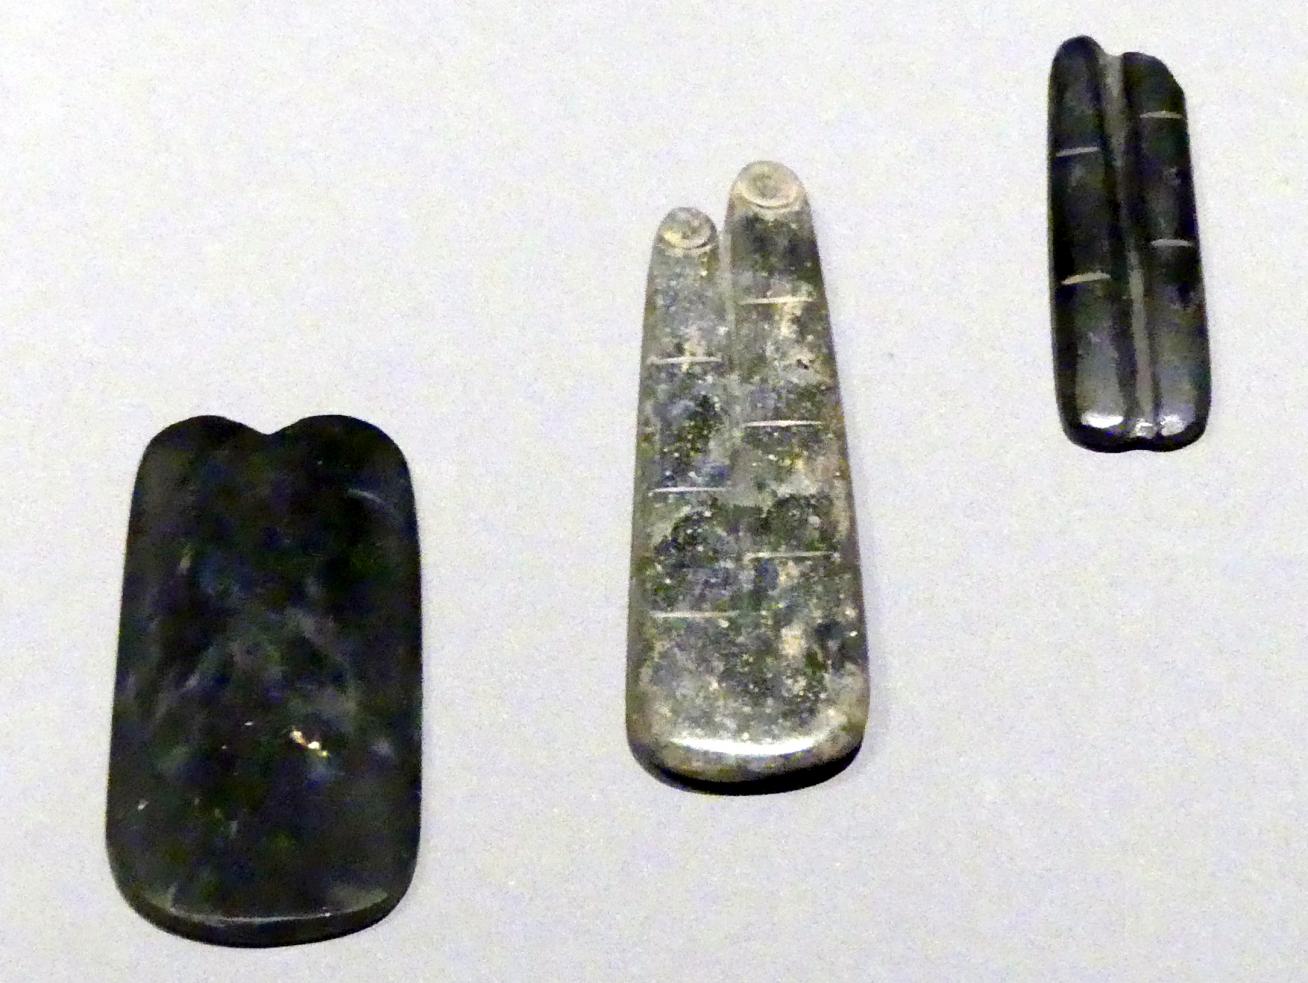 Amulette in Form von Fingern, Beinen, Herzen, Spätzeit, 360 - 342 v. Chr., 600 - 300 v. Chr., Bild 1/4